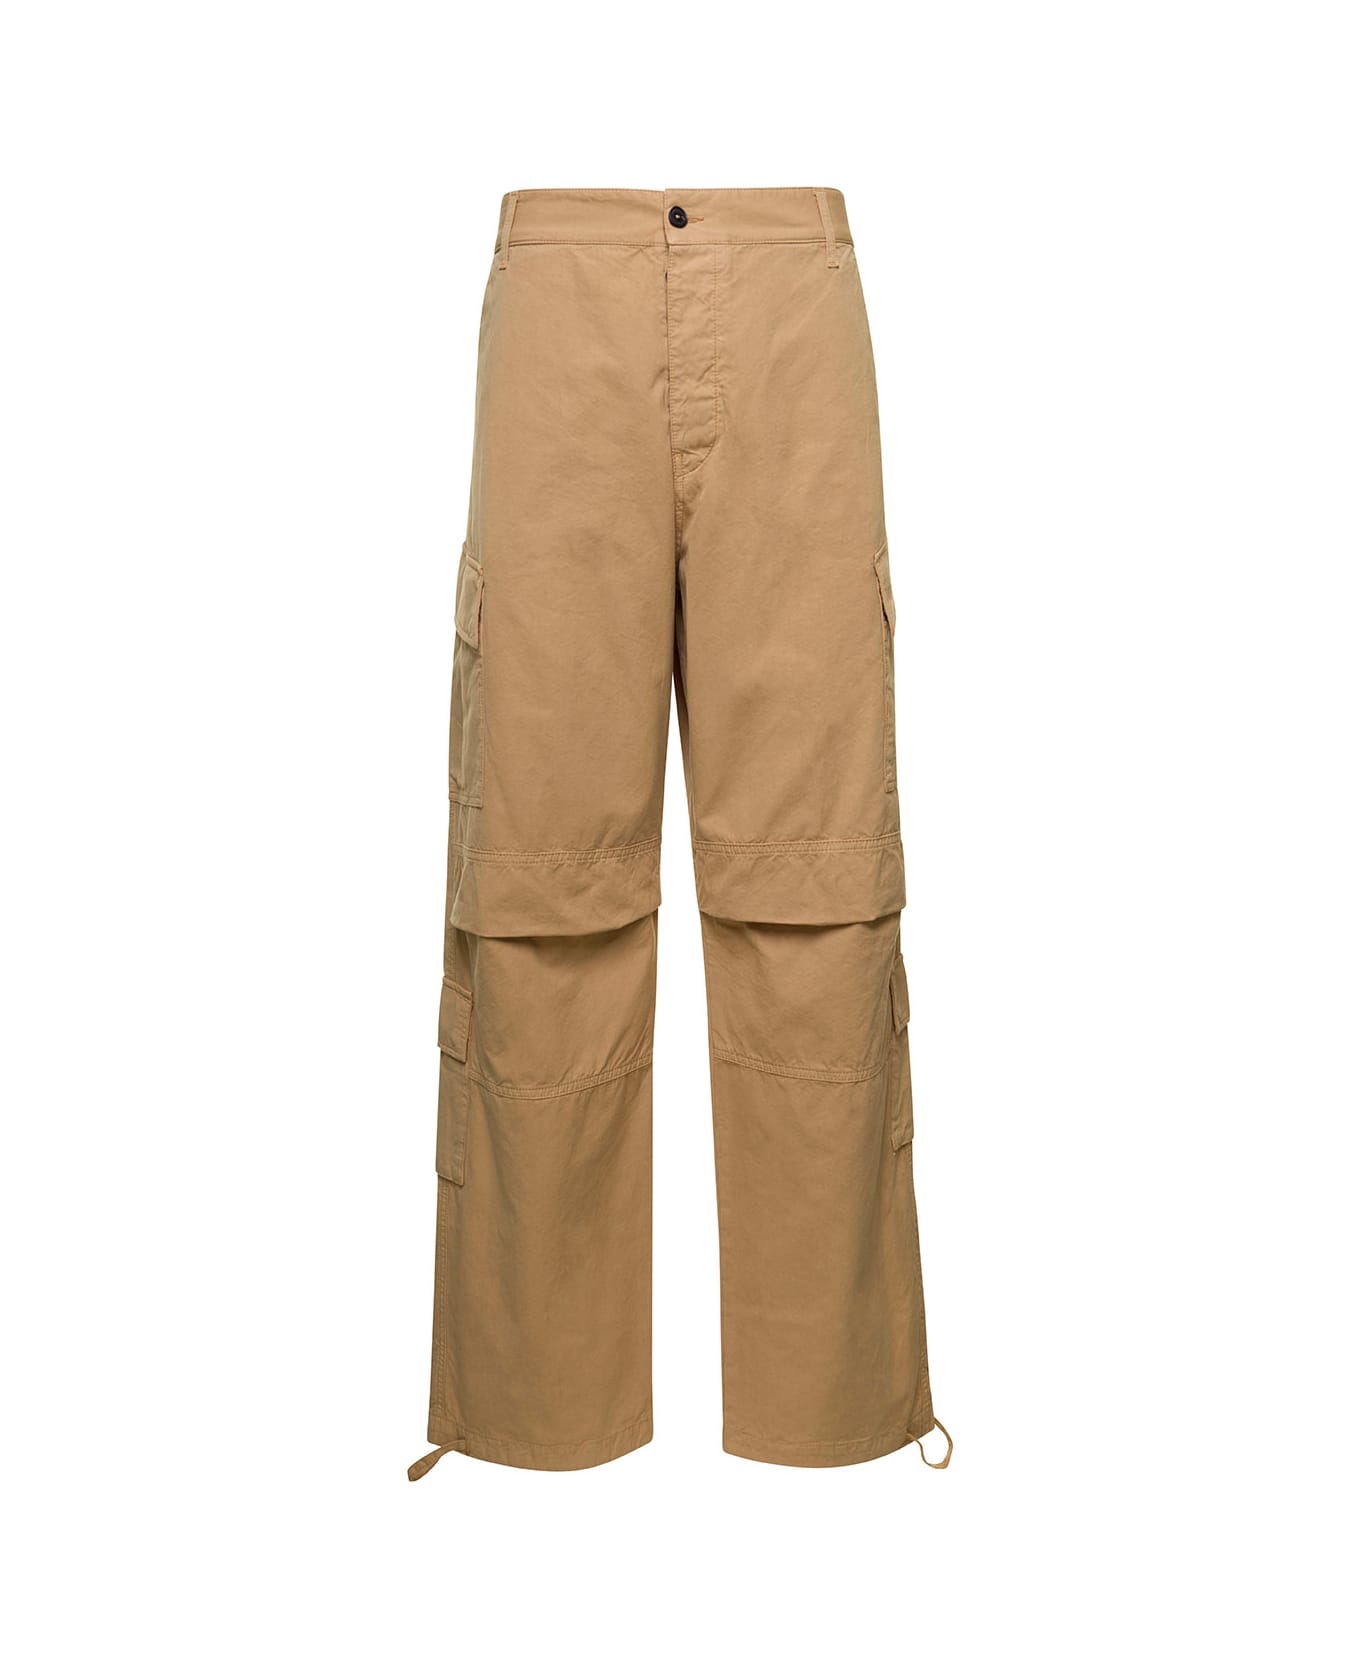 DARKPARK 'saint' Beige Cargo Pants With Pockets In Cotton Man - Beige